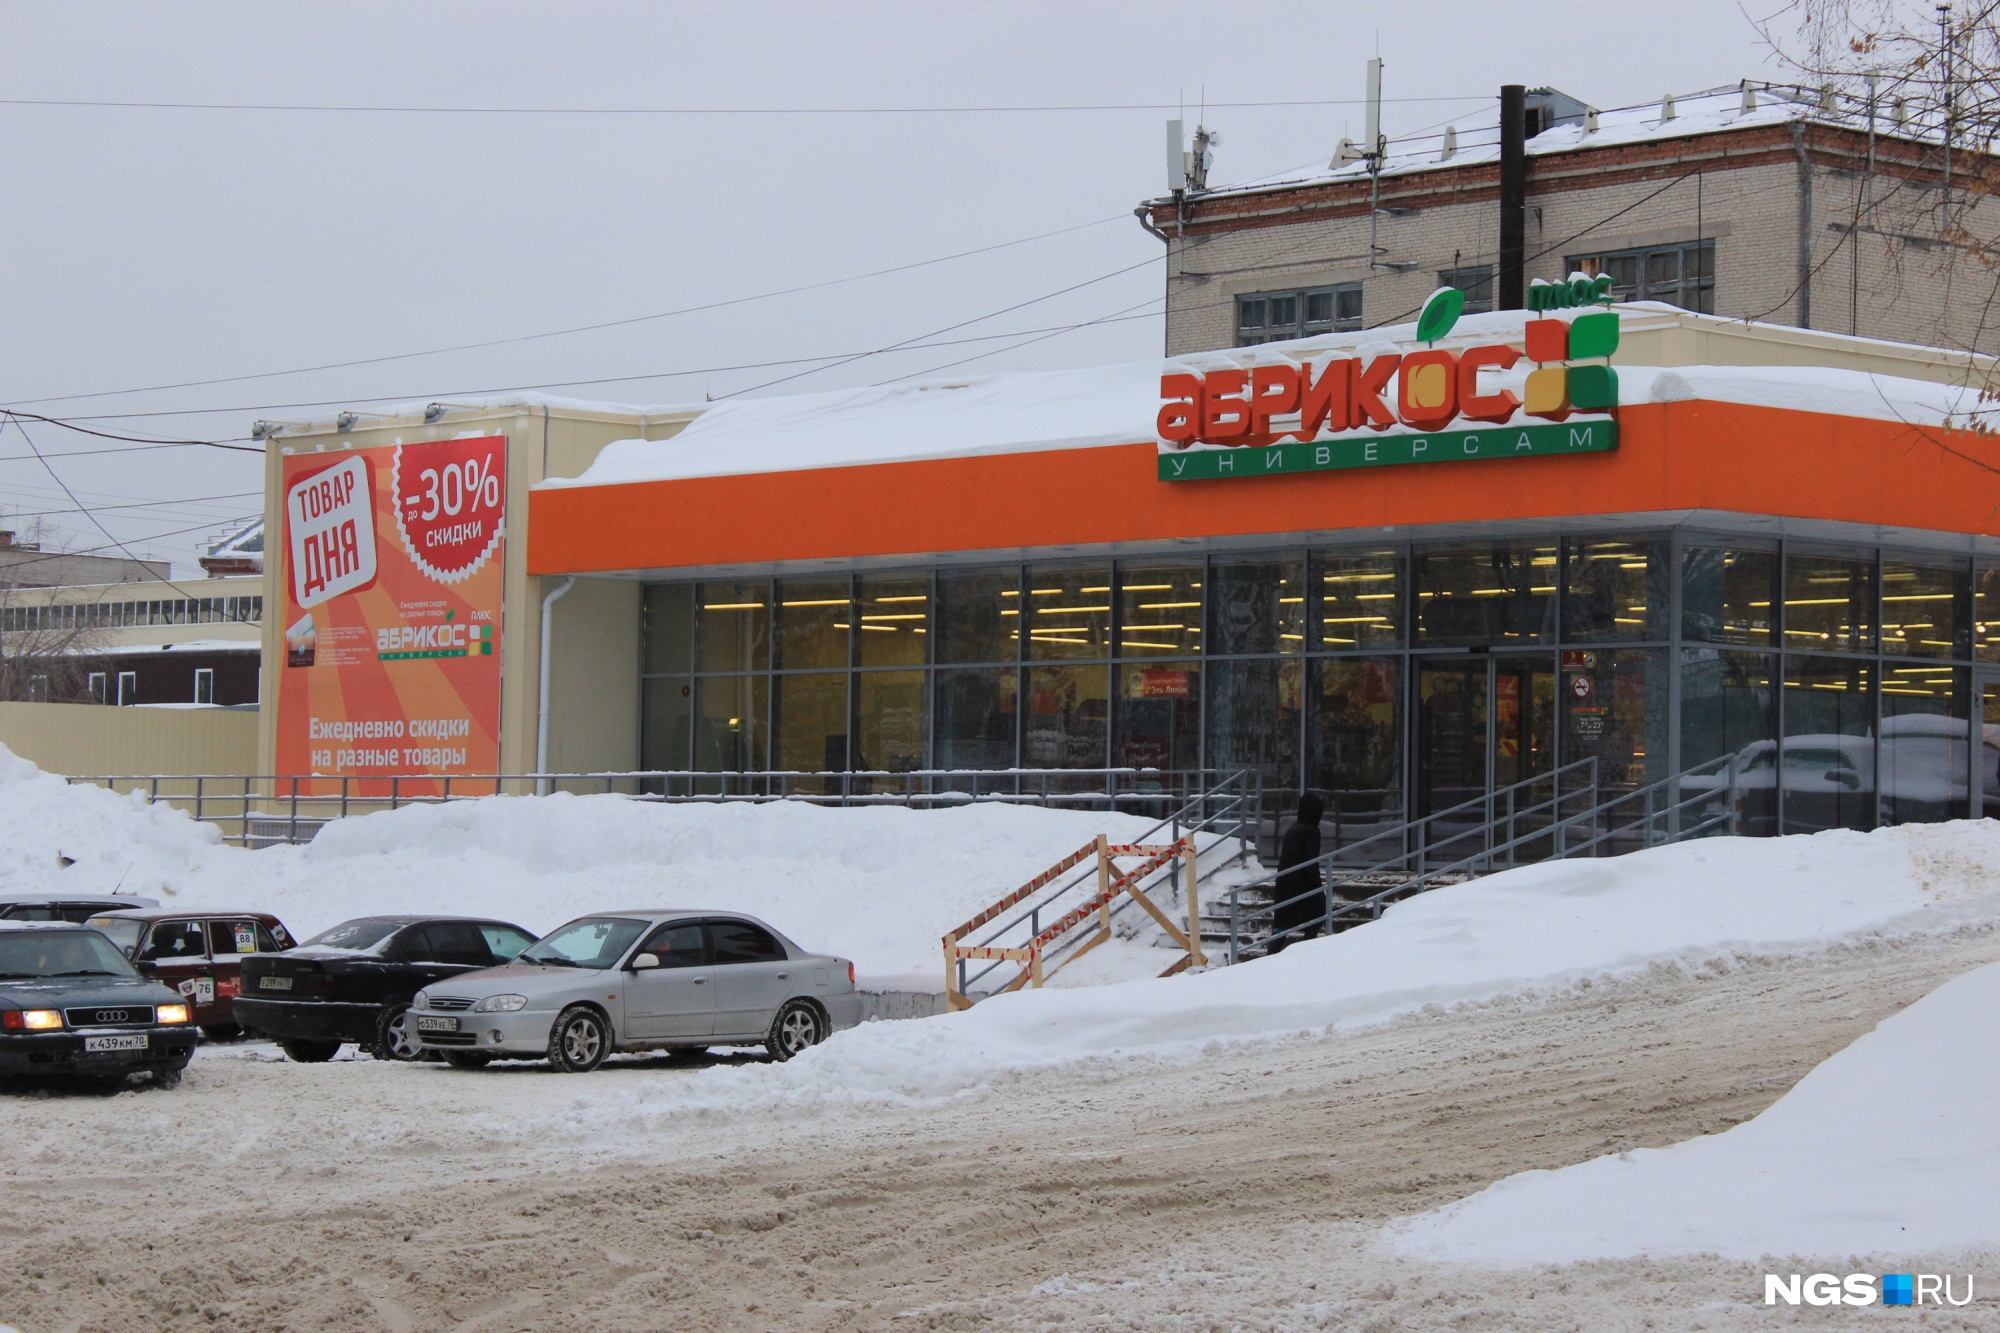 Сеть «Абрикос» в Новосибирске не появится, «Лама» будет открывать магазины под новым названием «Хорошие цены»